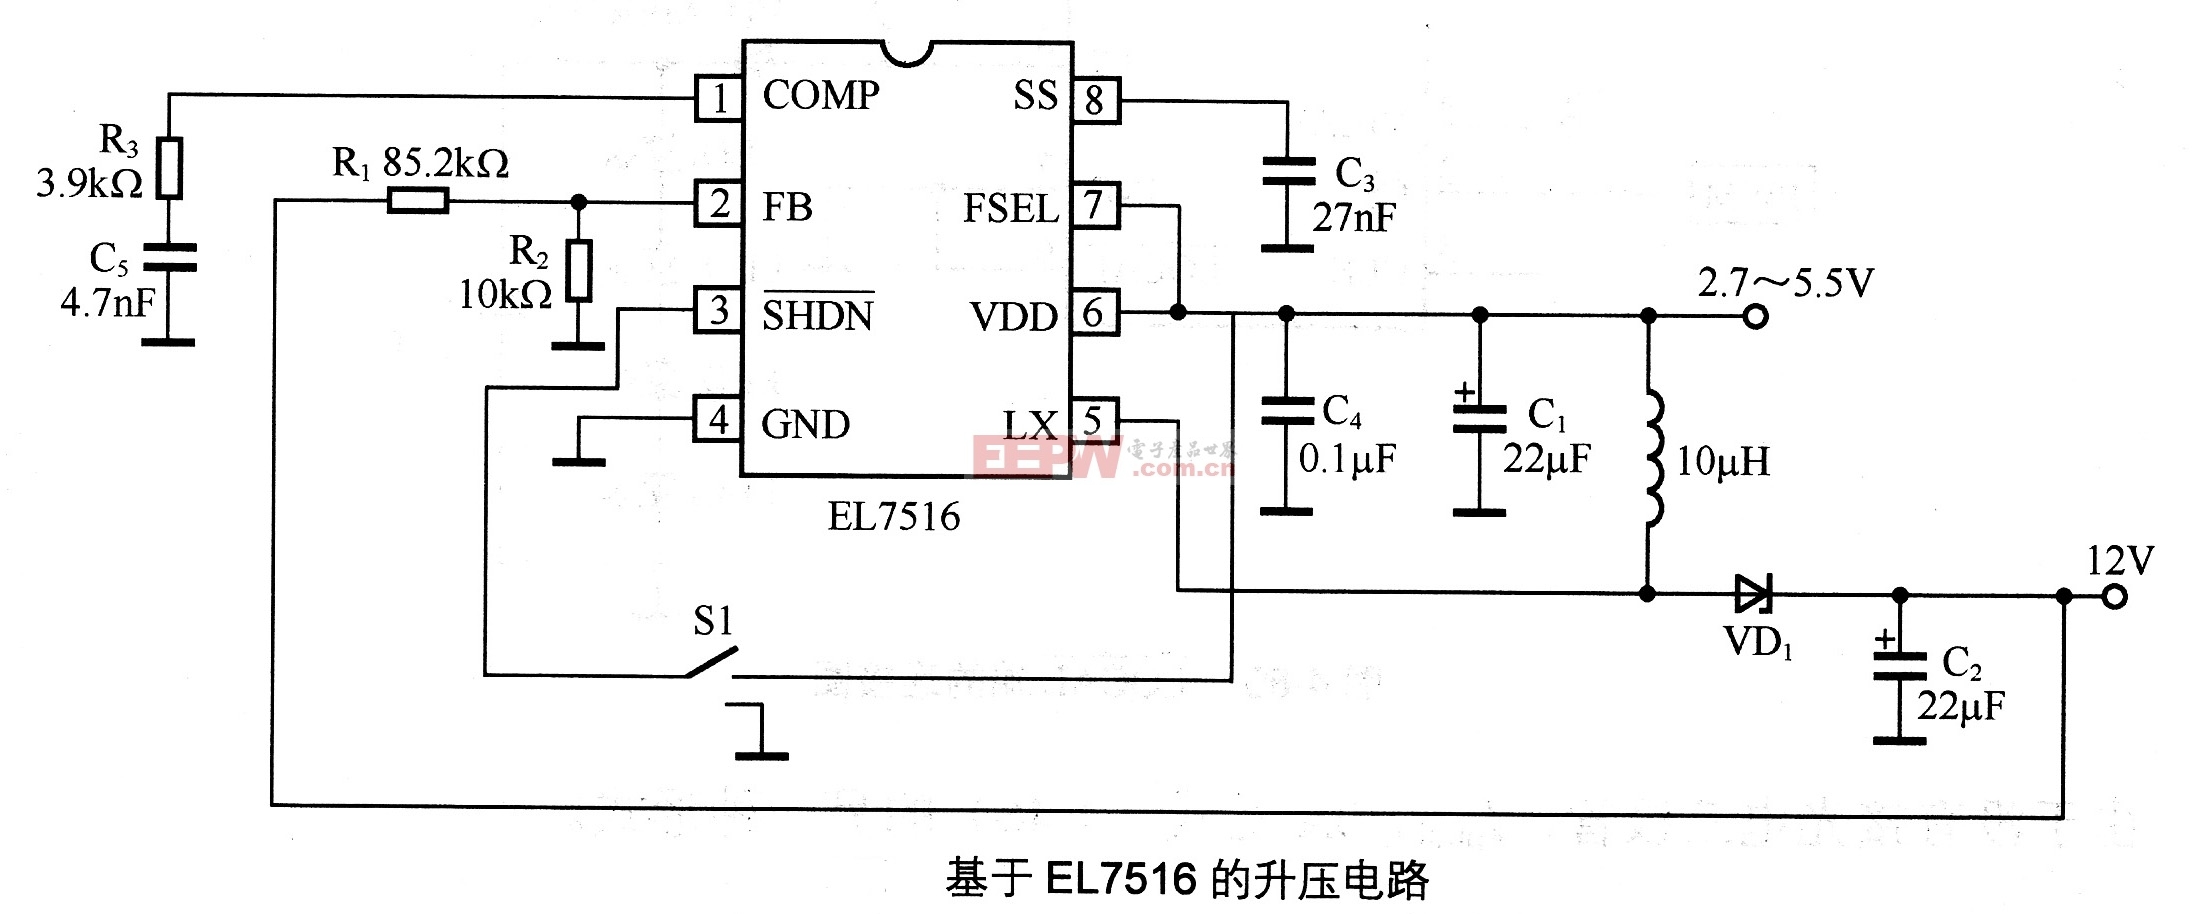 基于EL7516的升压电路